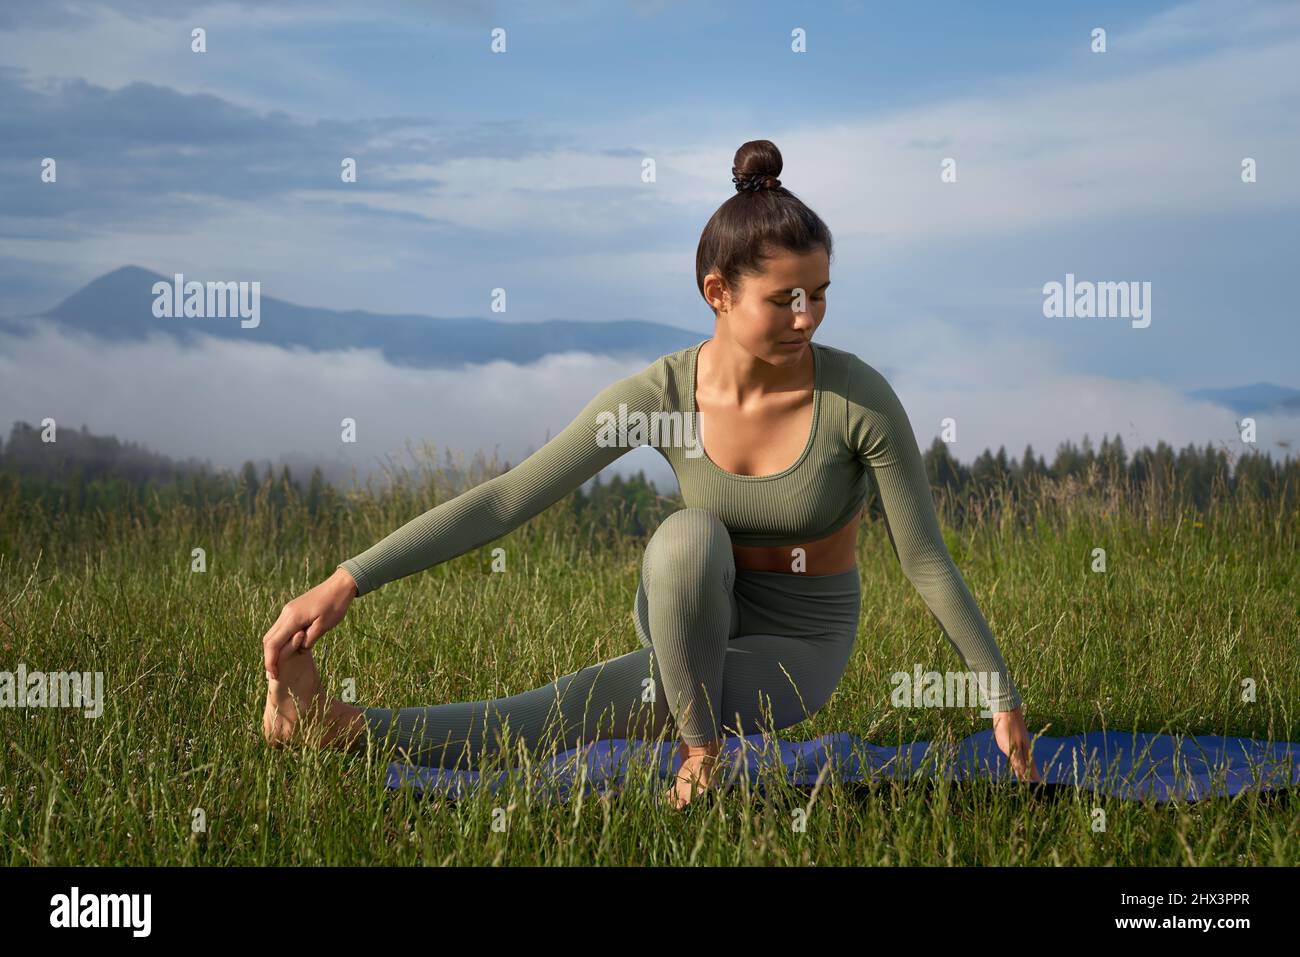 Attraktive Frau mit dunklem Haar, die morgens in der Natur Yoga praktiziert. Junge weibliche Person in Sportkleidung Training regelmäßig für einen gesunden und gesunden Körper. Stockfoto